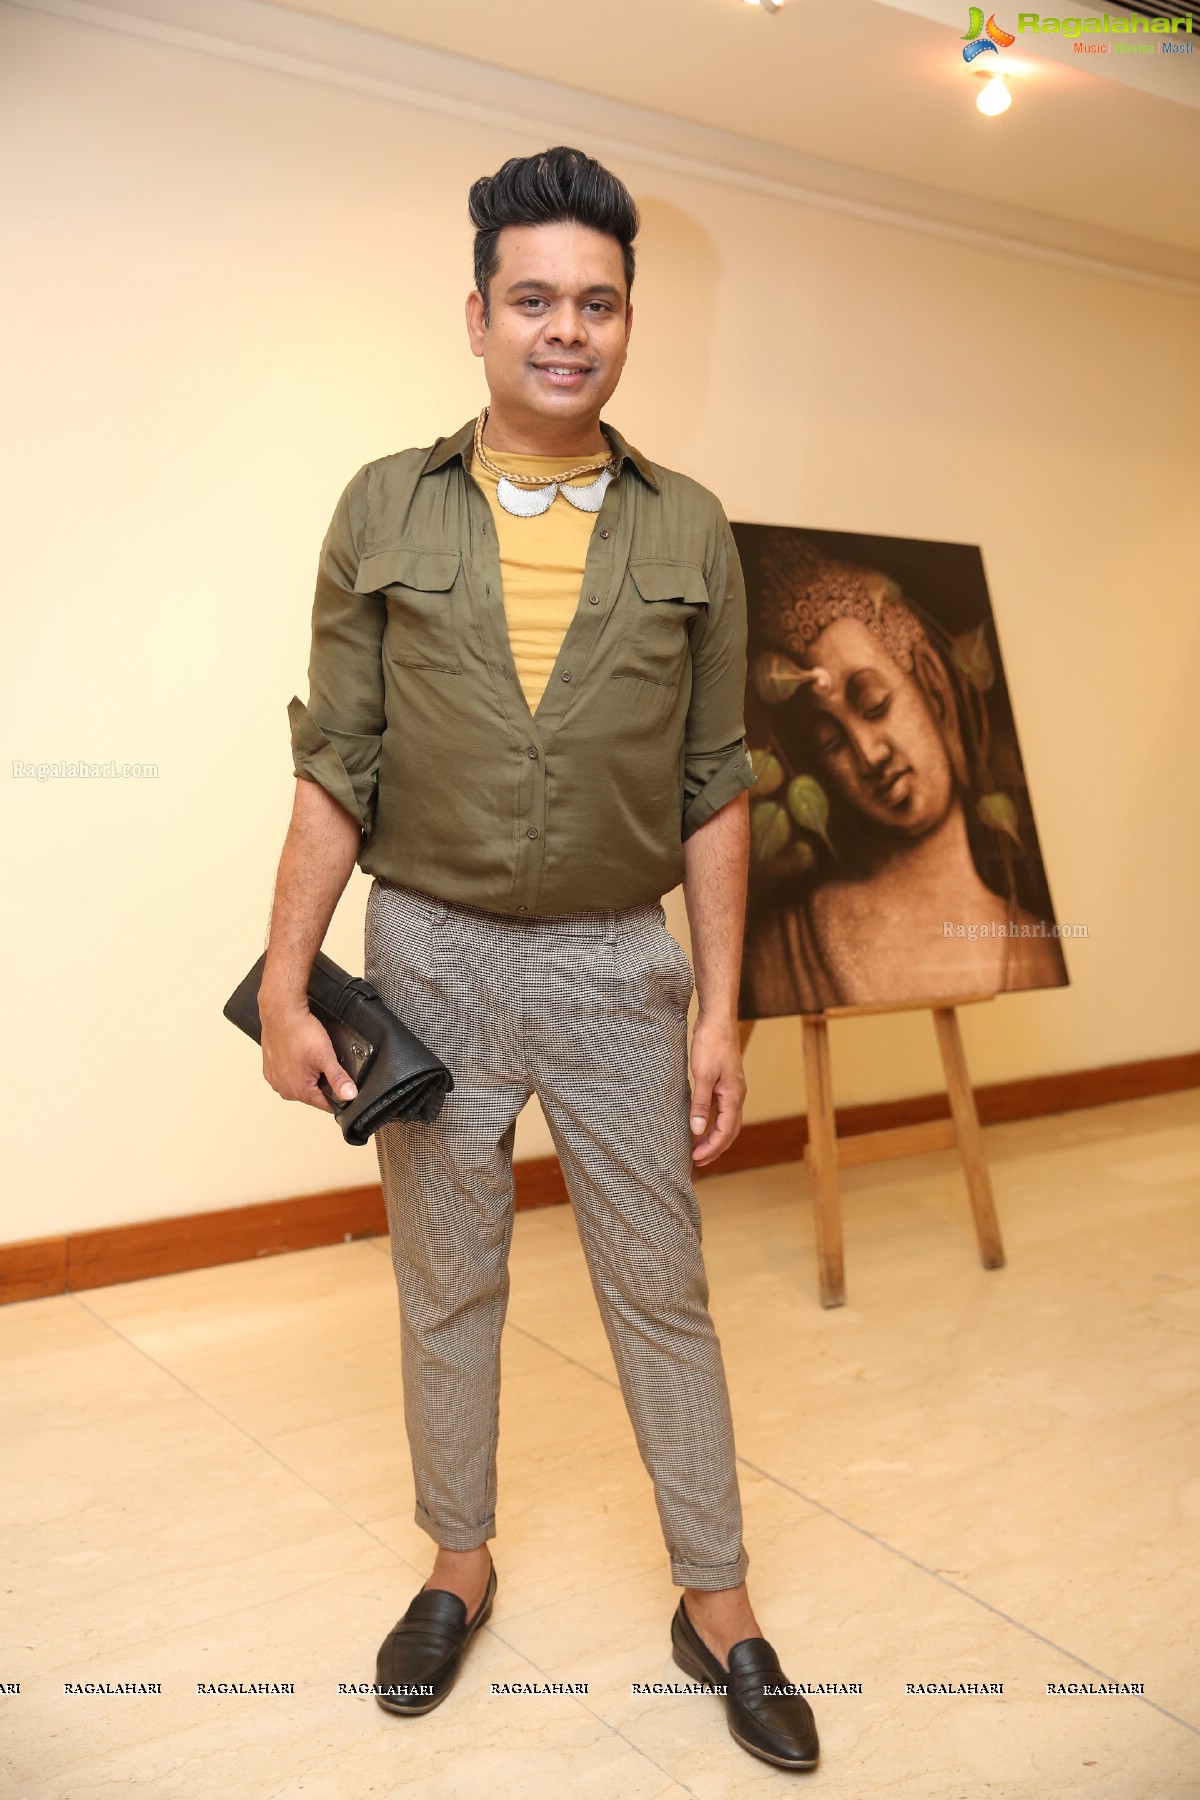 Vignette - Art Showcase at Marriott Hotel, Hyderabad